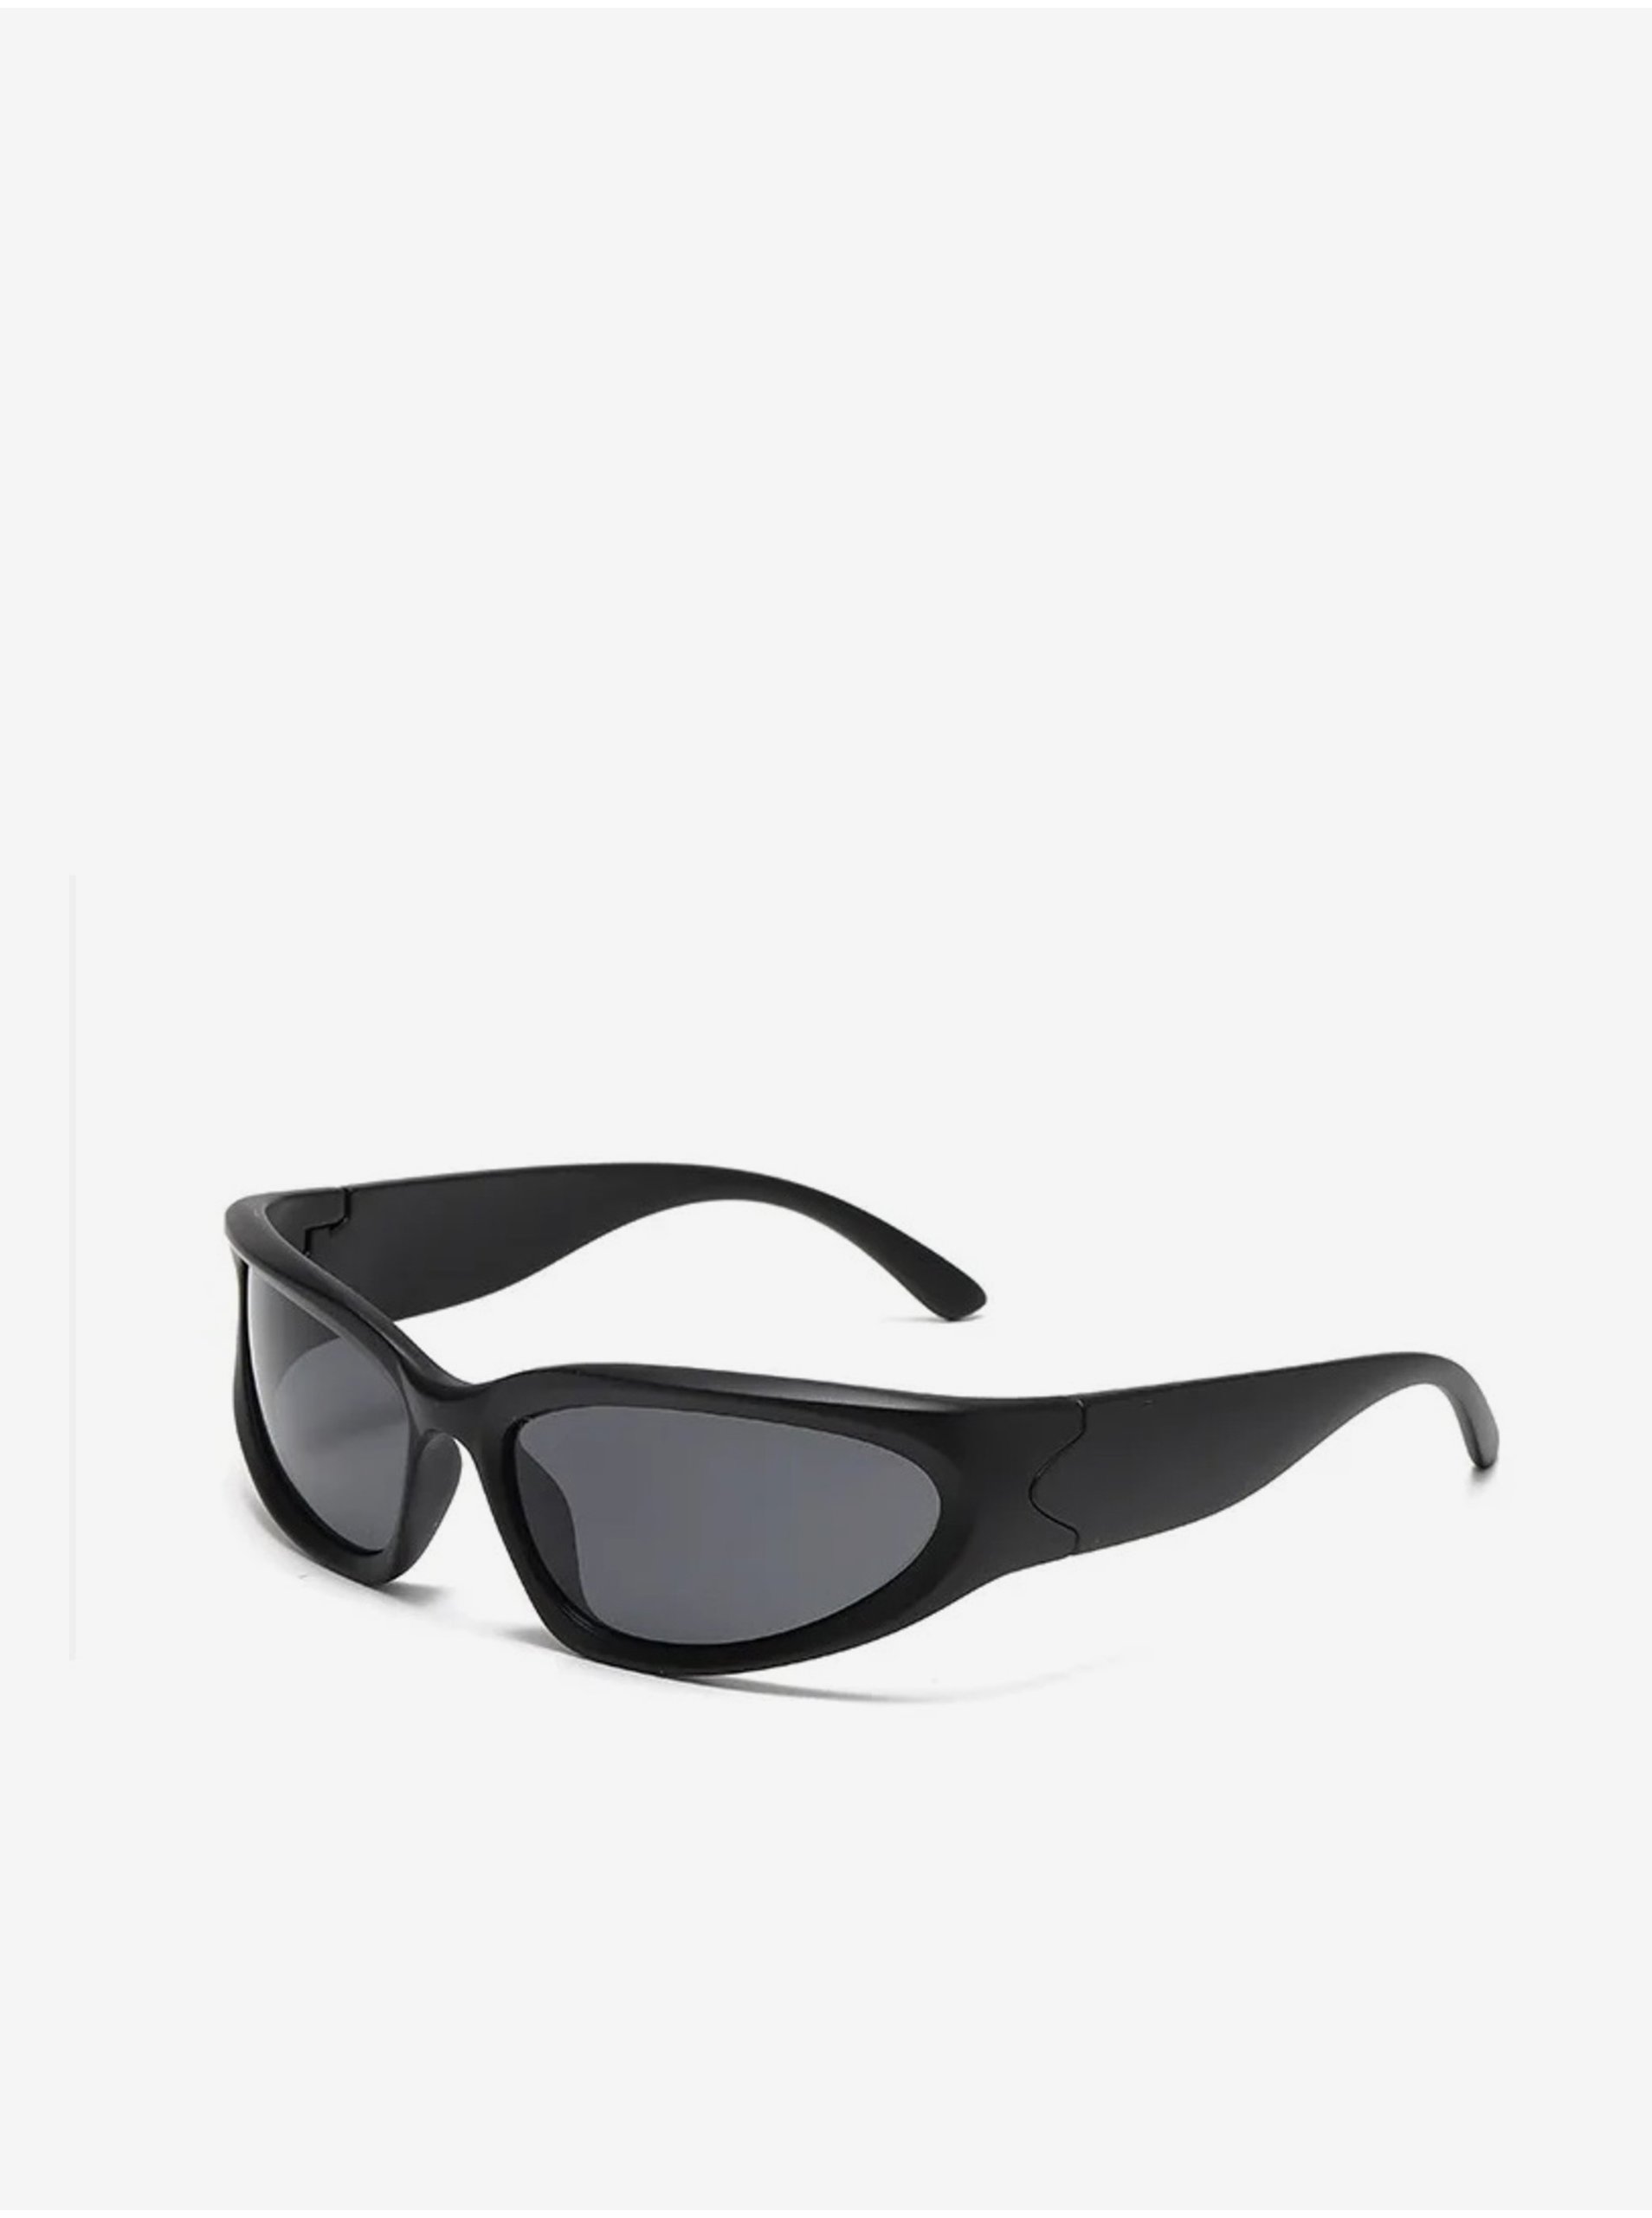 E-shop Čierne unisex športové slnečné okuliare VeyRey Steampunk Yolzalgil